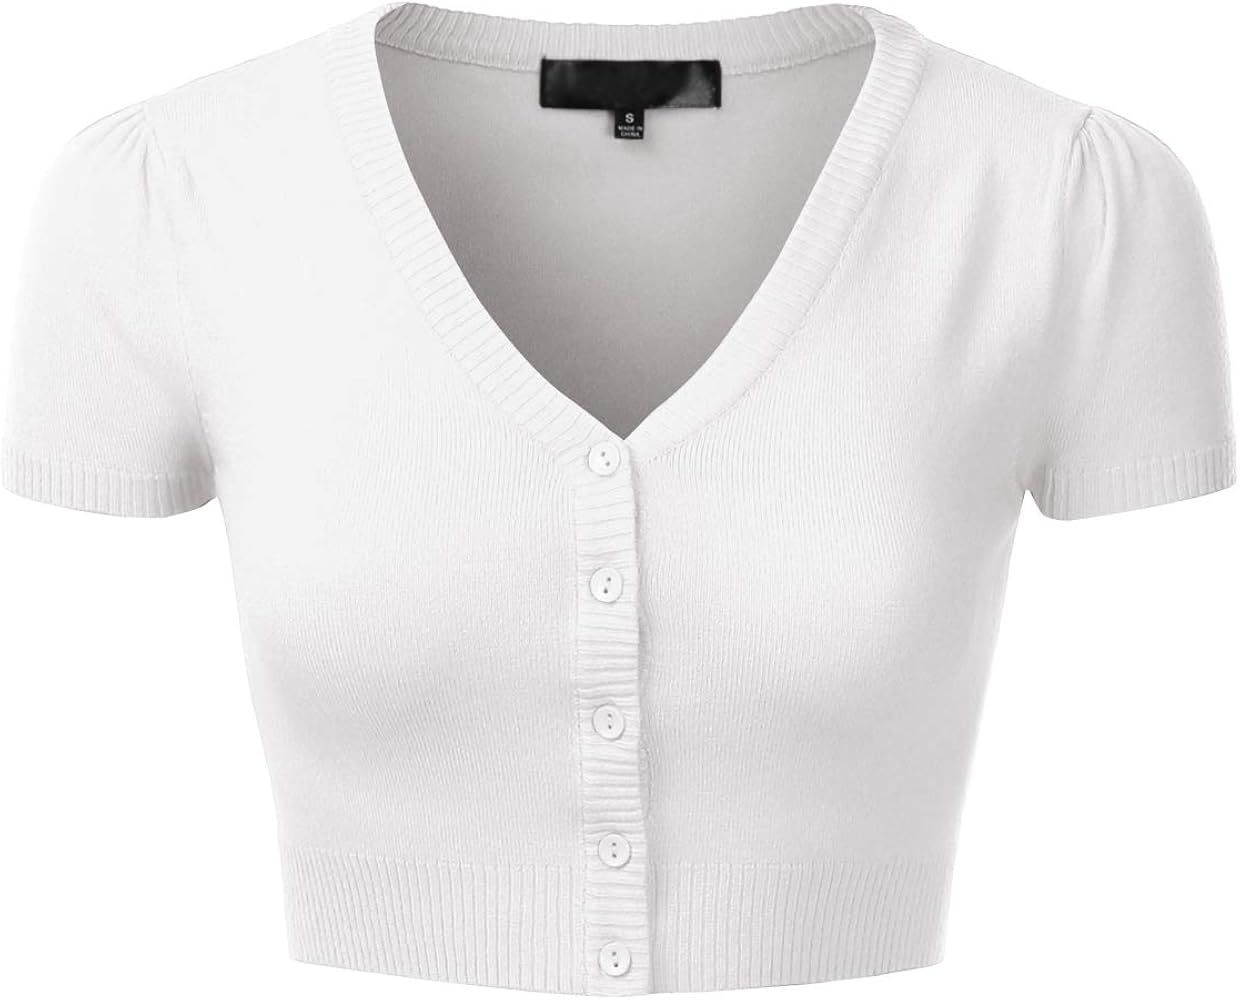 Women's Fitted V-Neck Bolero Shrug Cropped Short Sleeve Cardigan Sweater (S-3X) | Amazon (US)